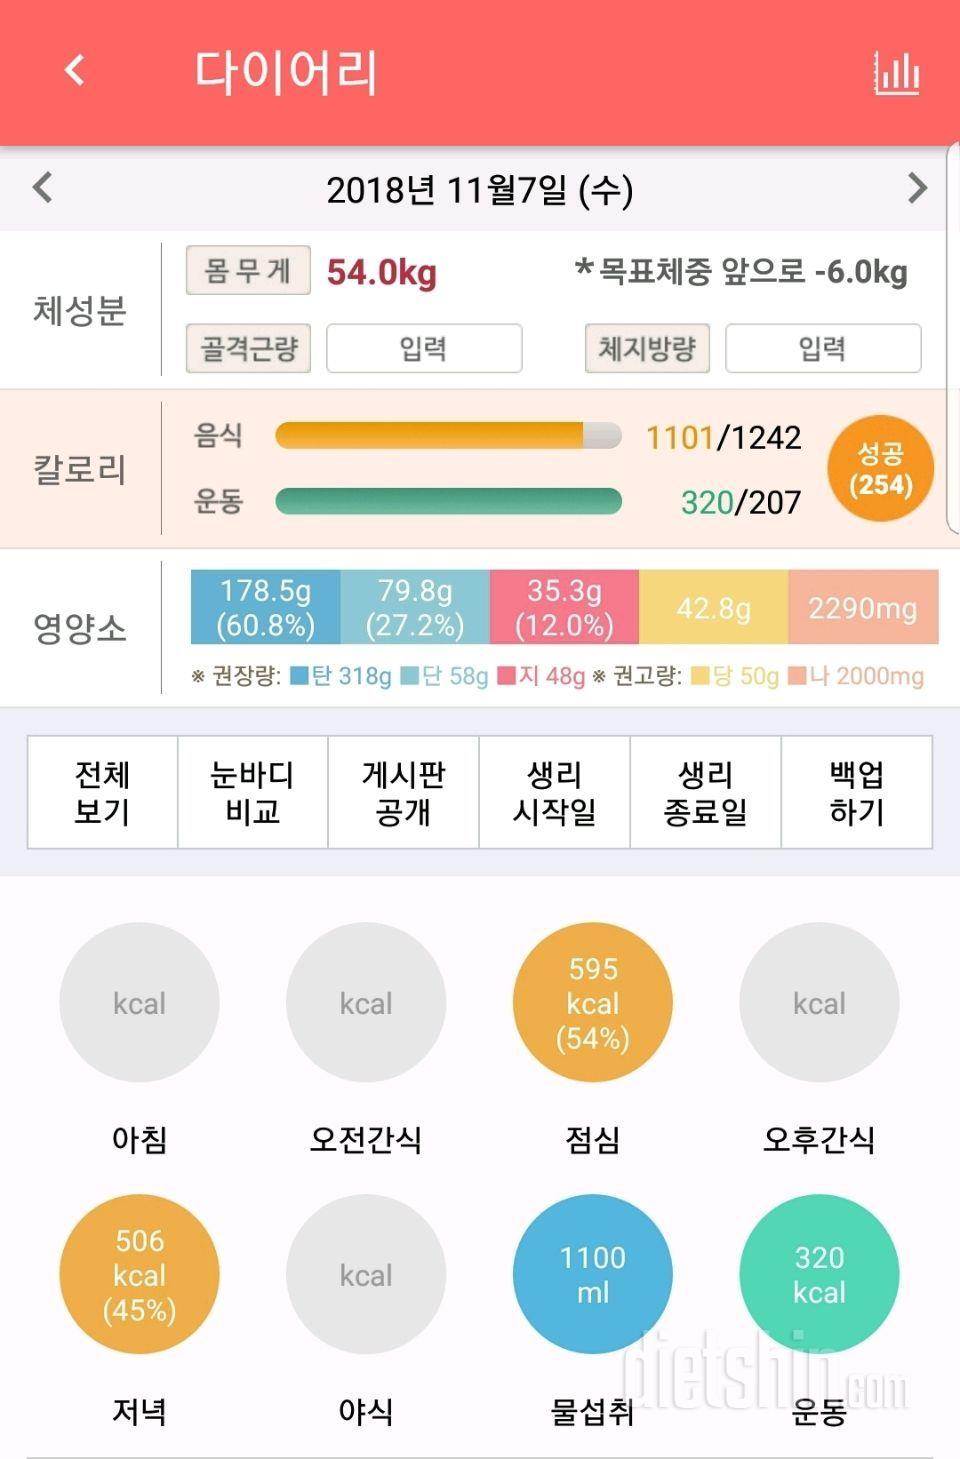 11/6부터 다시 다이어트 시작했어윰 :) 7일 식단&운동